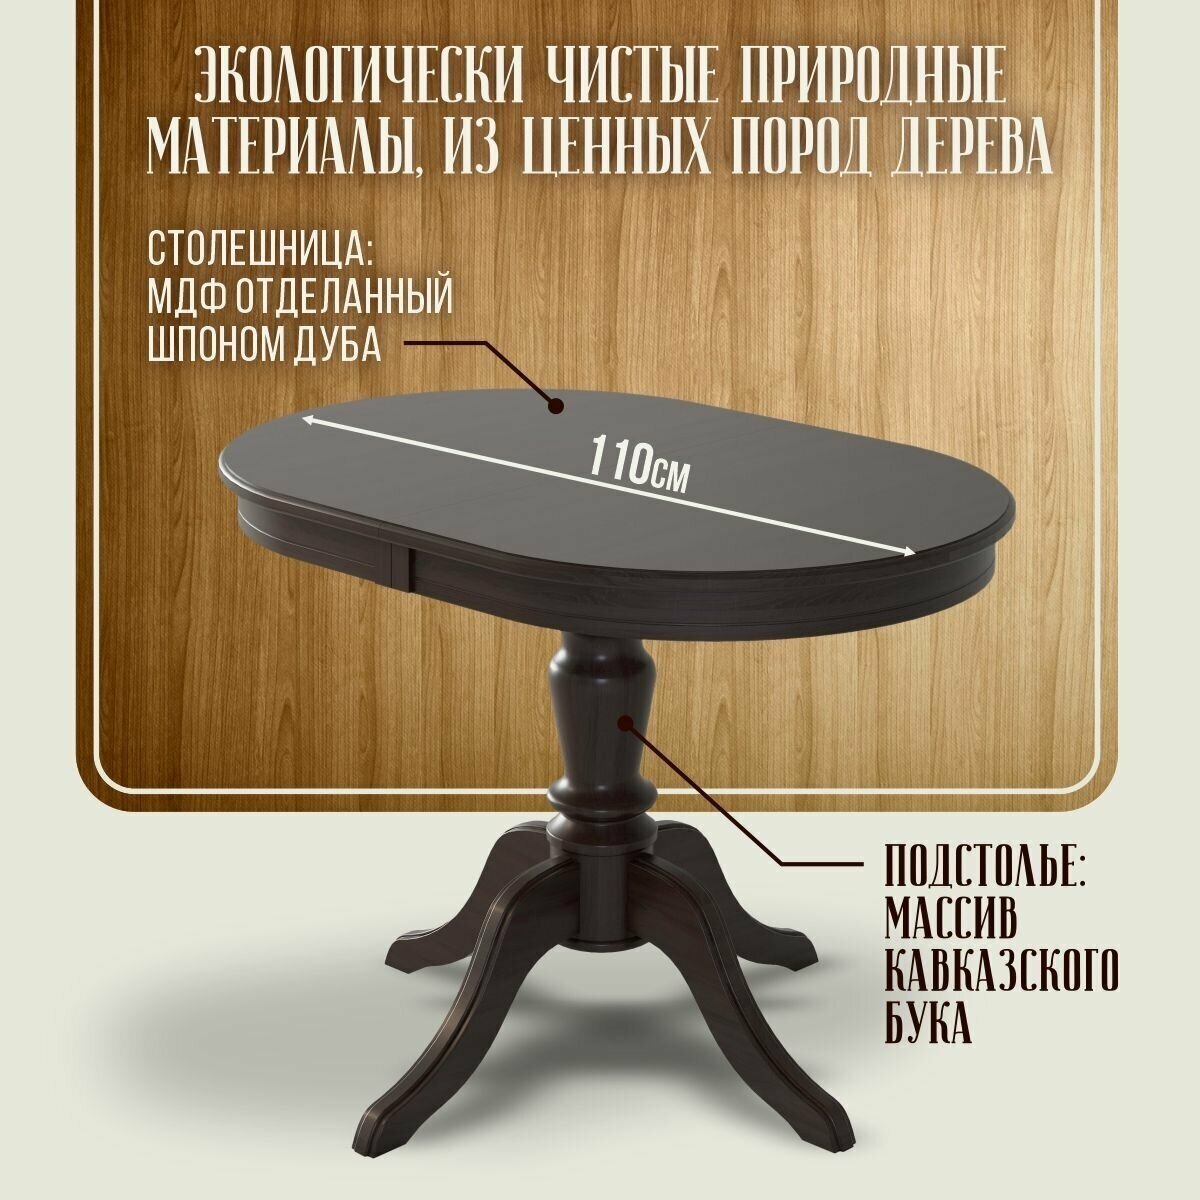 Стол обеденный "Капелла" Ренессанс раздвижной, 75 х 110 х 75 см, венге, шпон дуба, массив бука